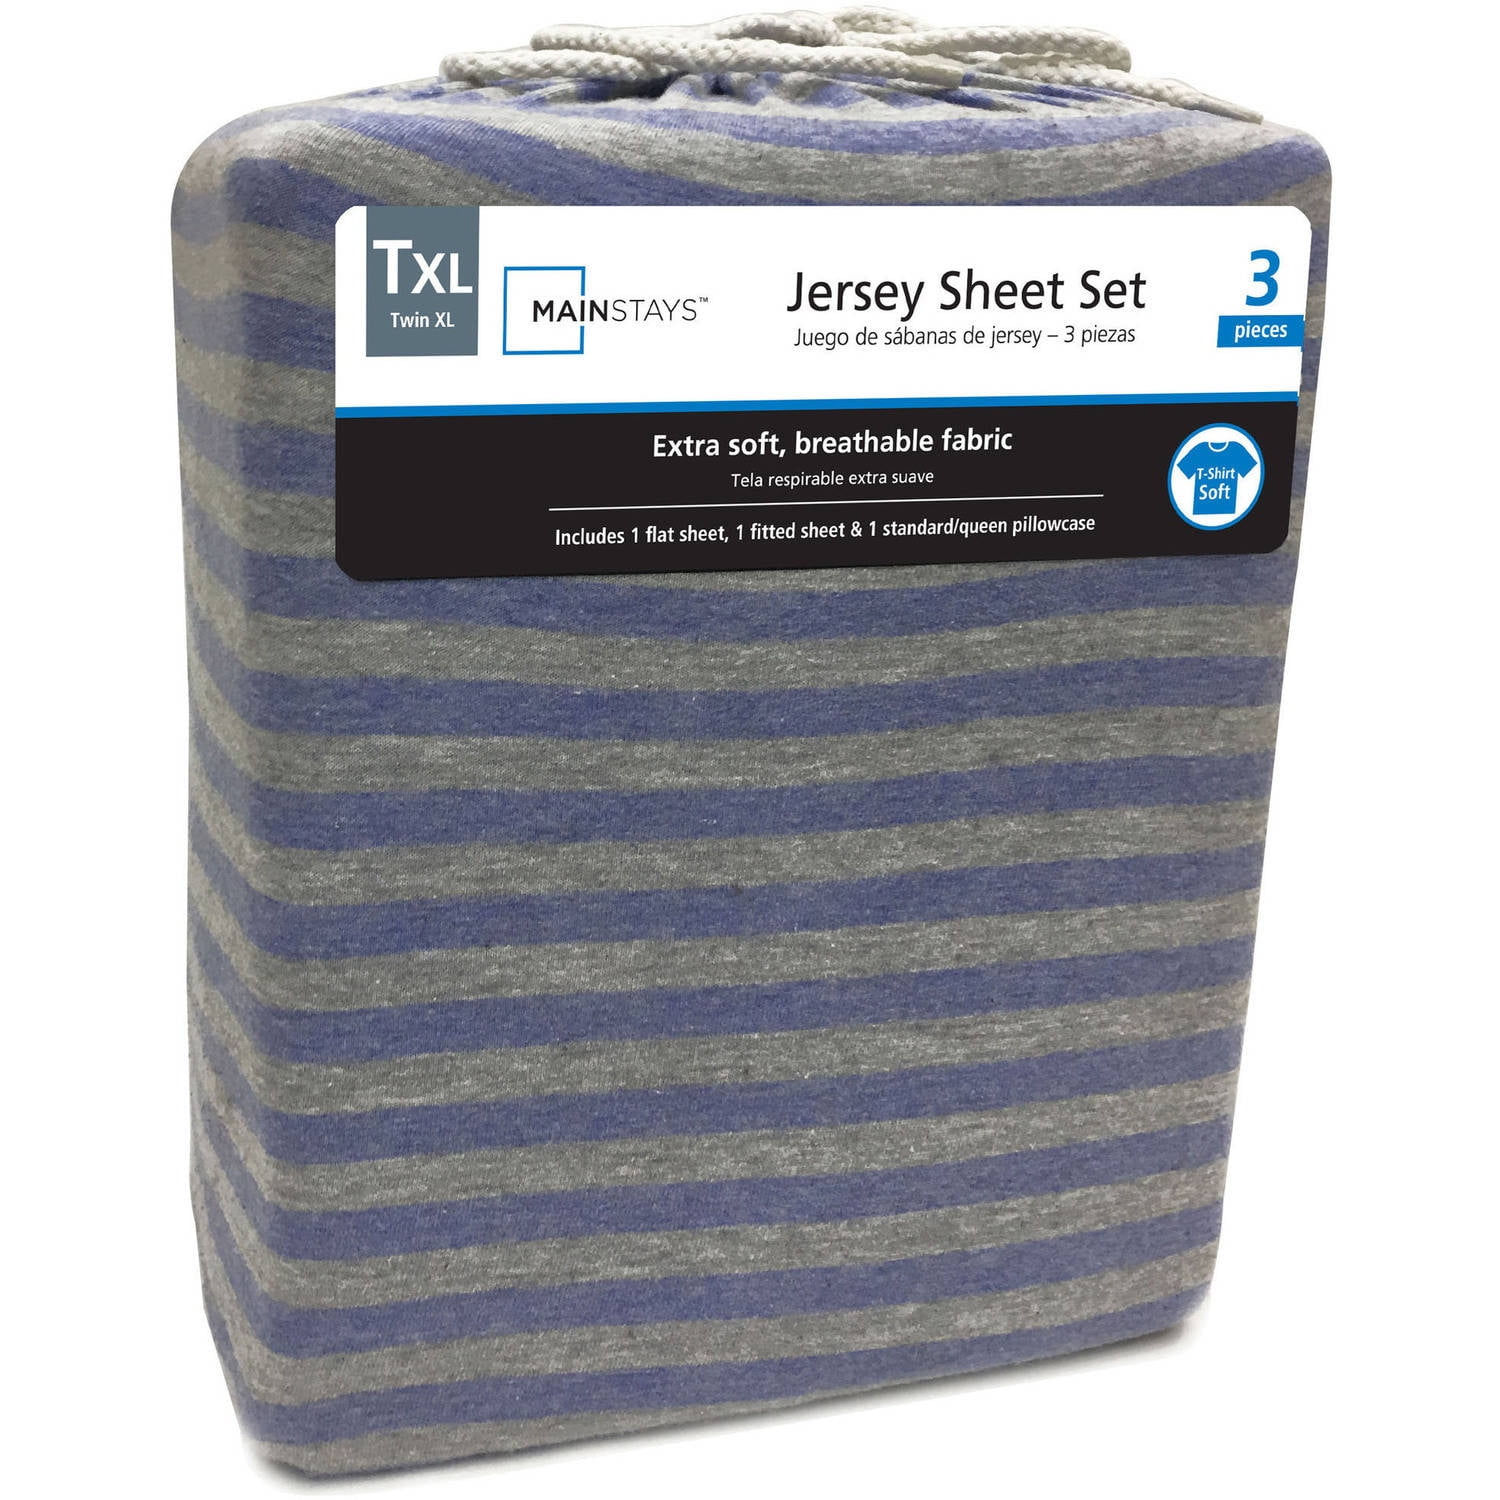 Mainstays Knit Jersey Sheet Set 300008540103 | eBay